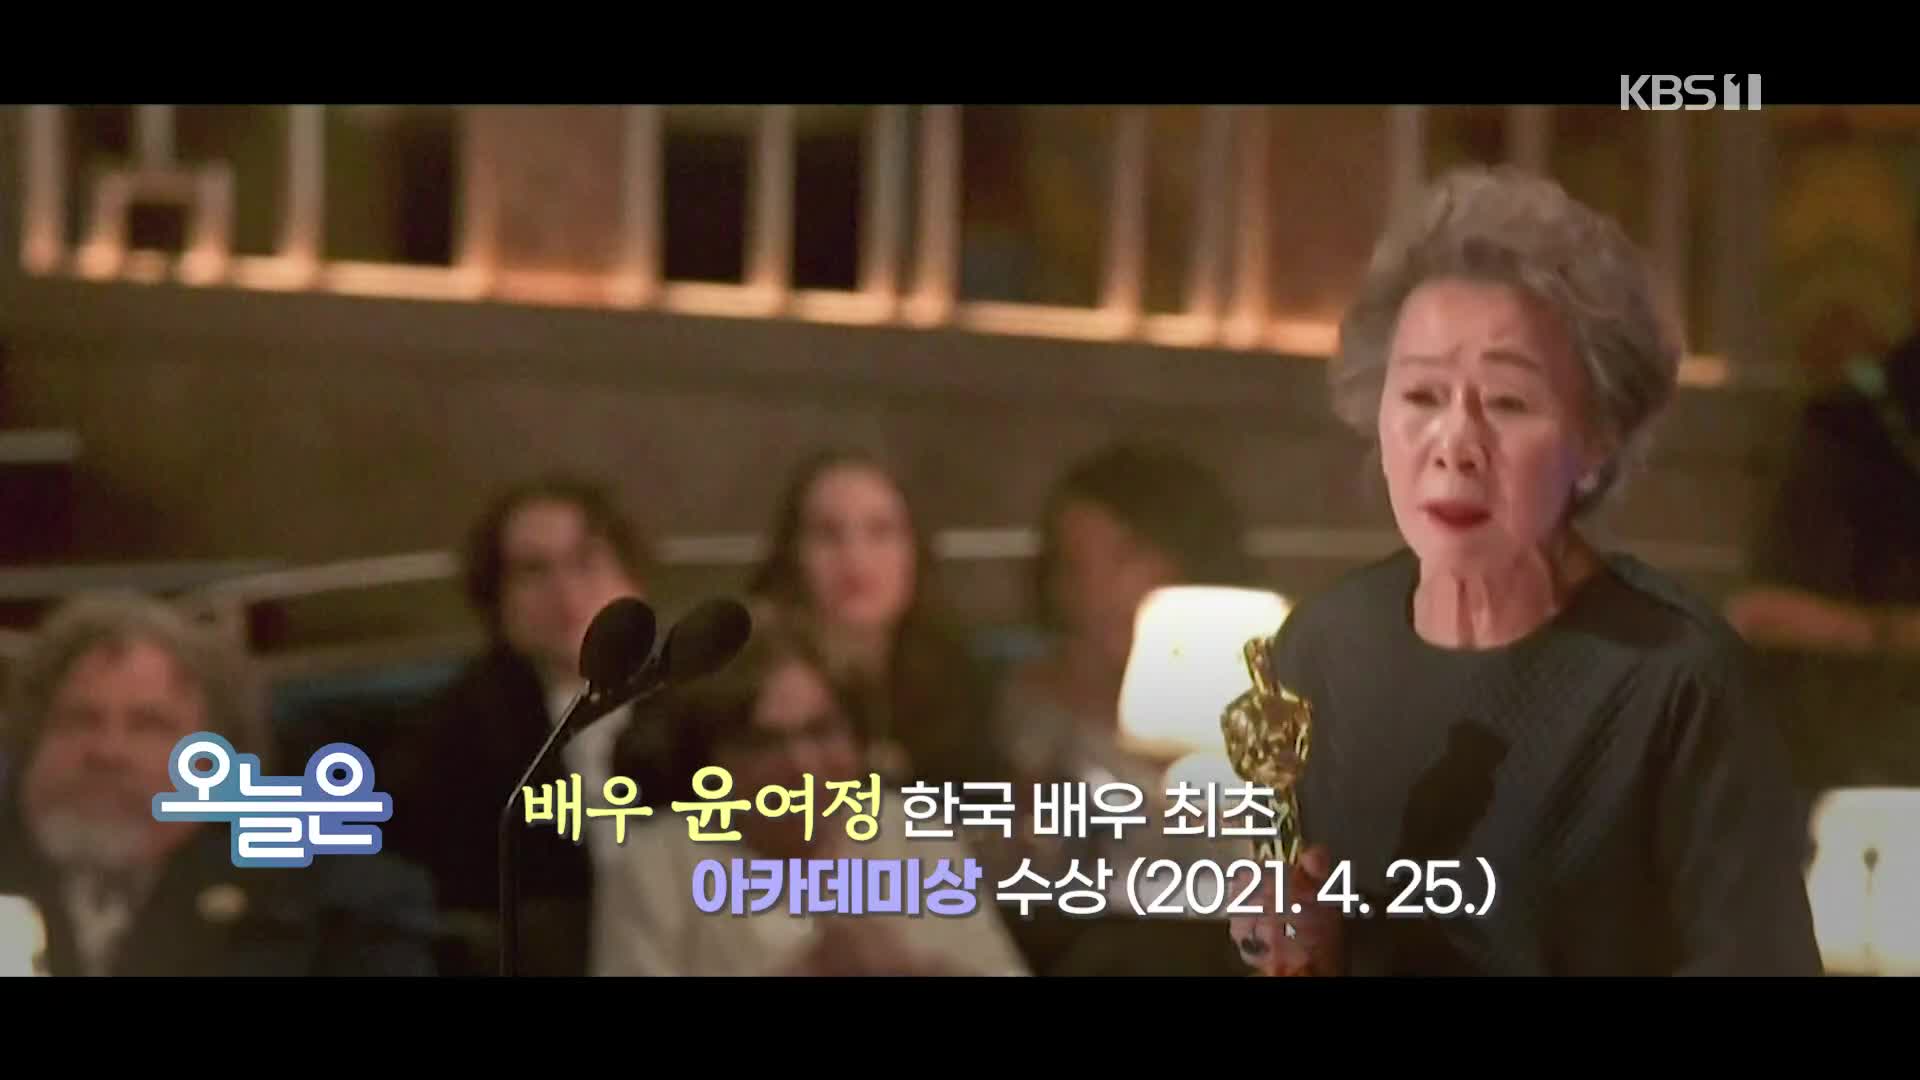 [오늘은] 배우 윤여정 한국 배우 최초로 아카데미상 수상 (2021. 4. 25.)